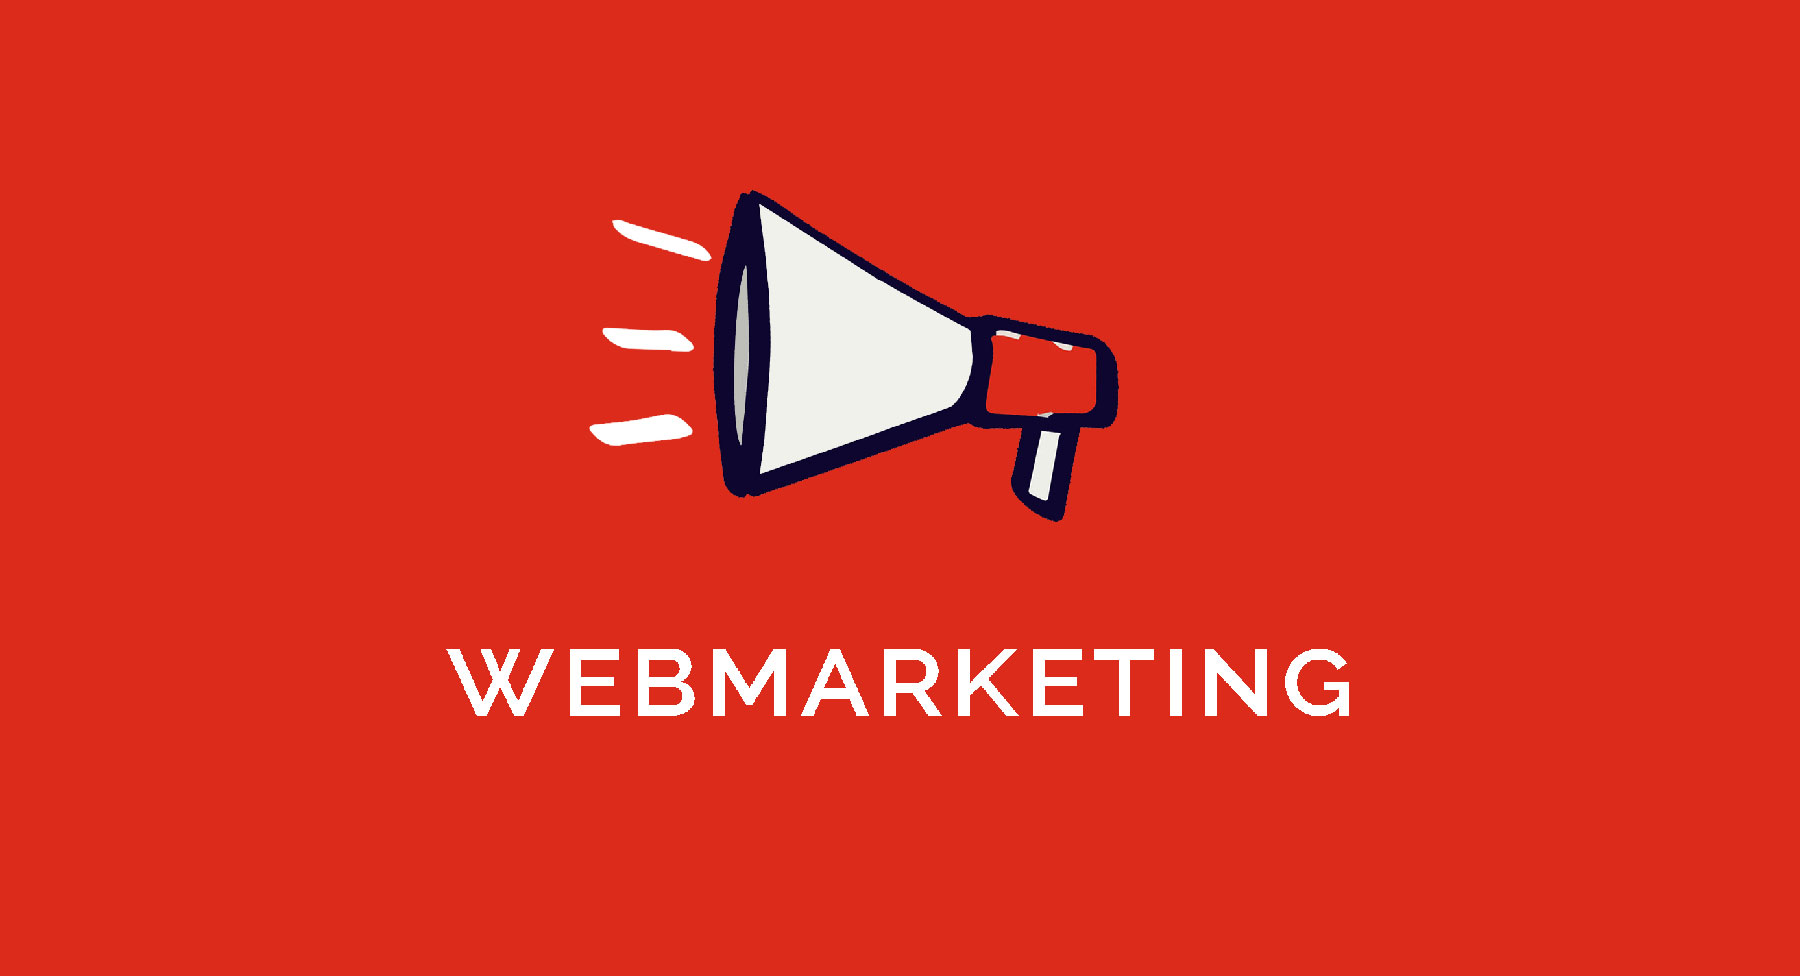 ¿Qué es el webmarketing? Definición, empleos, empresas y consejos